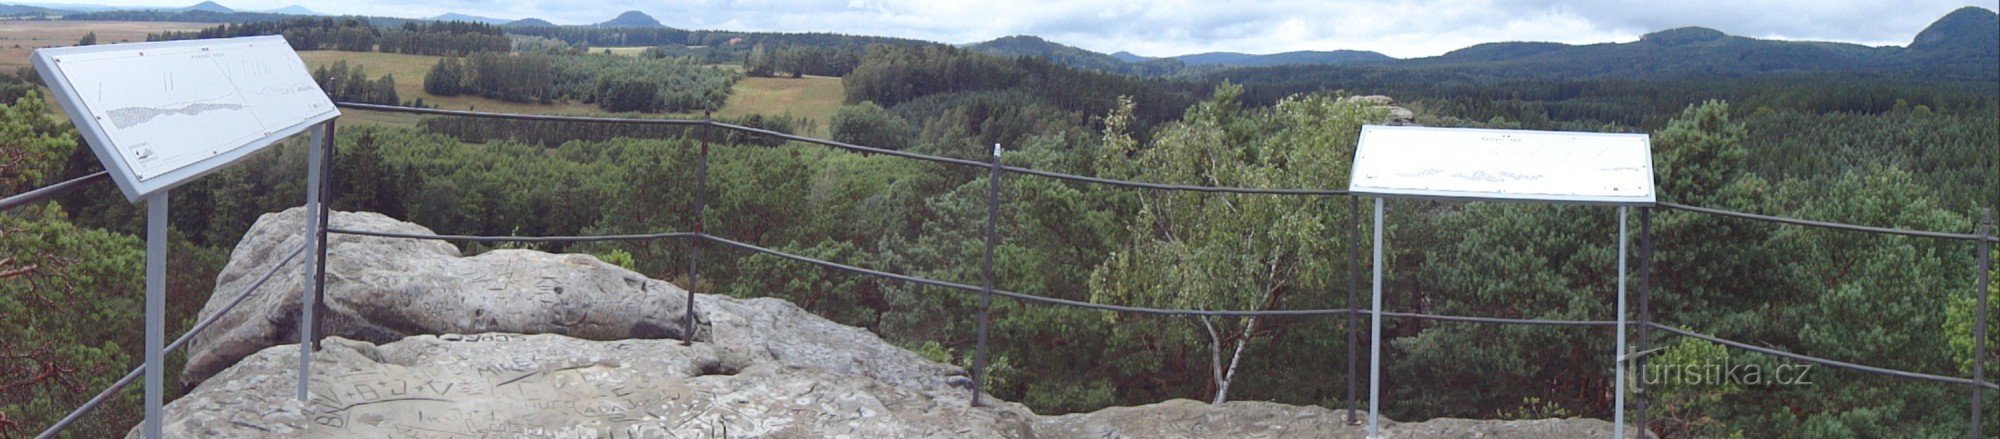 panorama från toppplatån av Raven Rocks